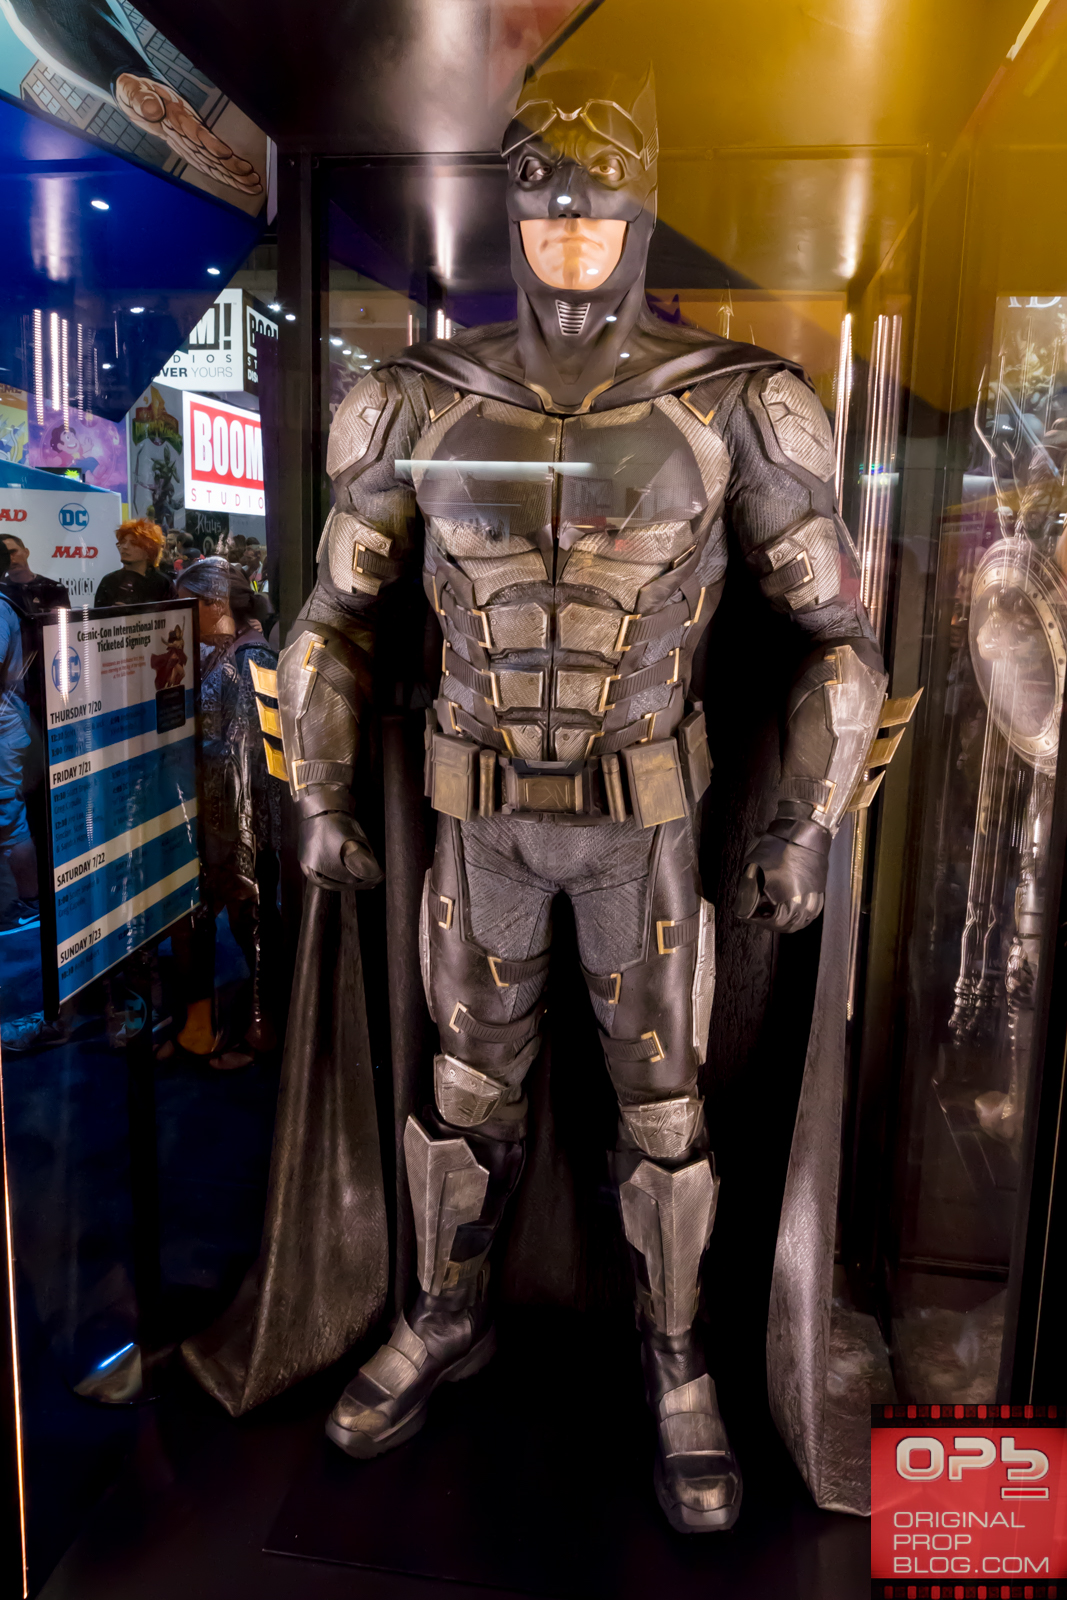 San Diego Comic-Con 2017: DC Comics “Justice League” Costume Exhibit (#SDCC # ...1067 x 1600